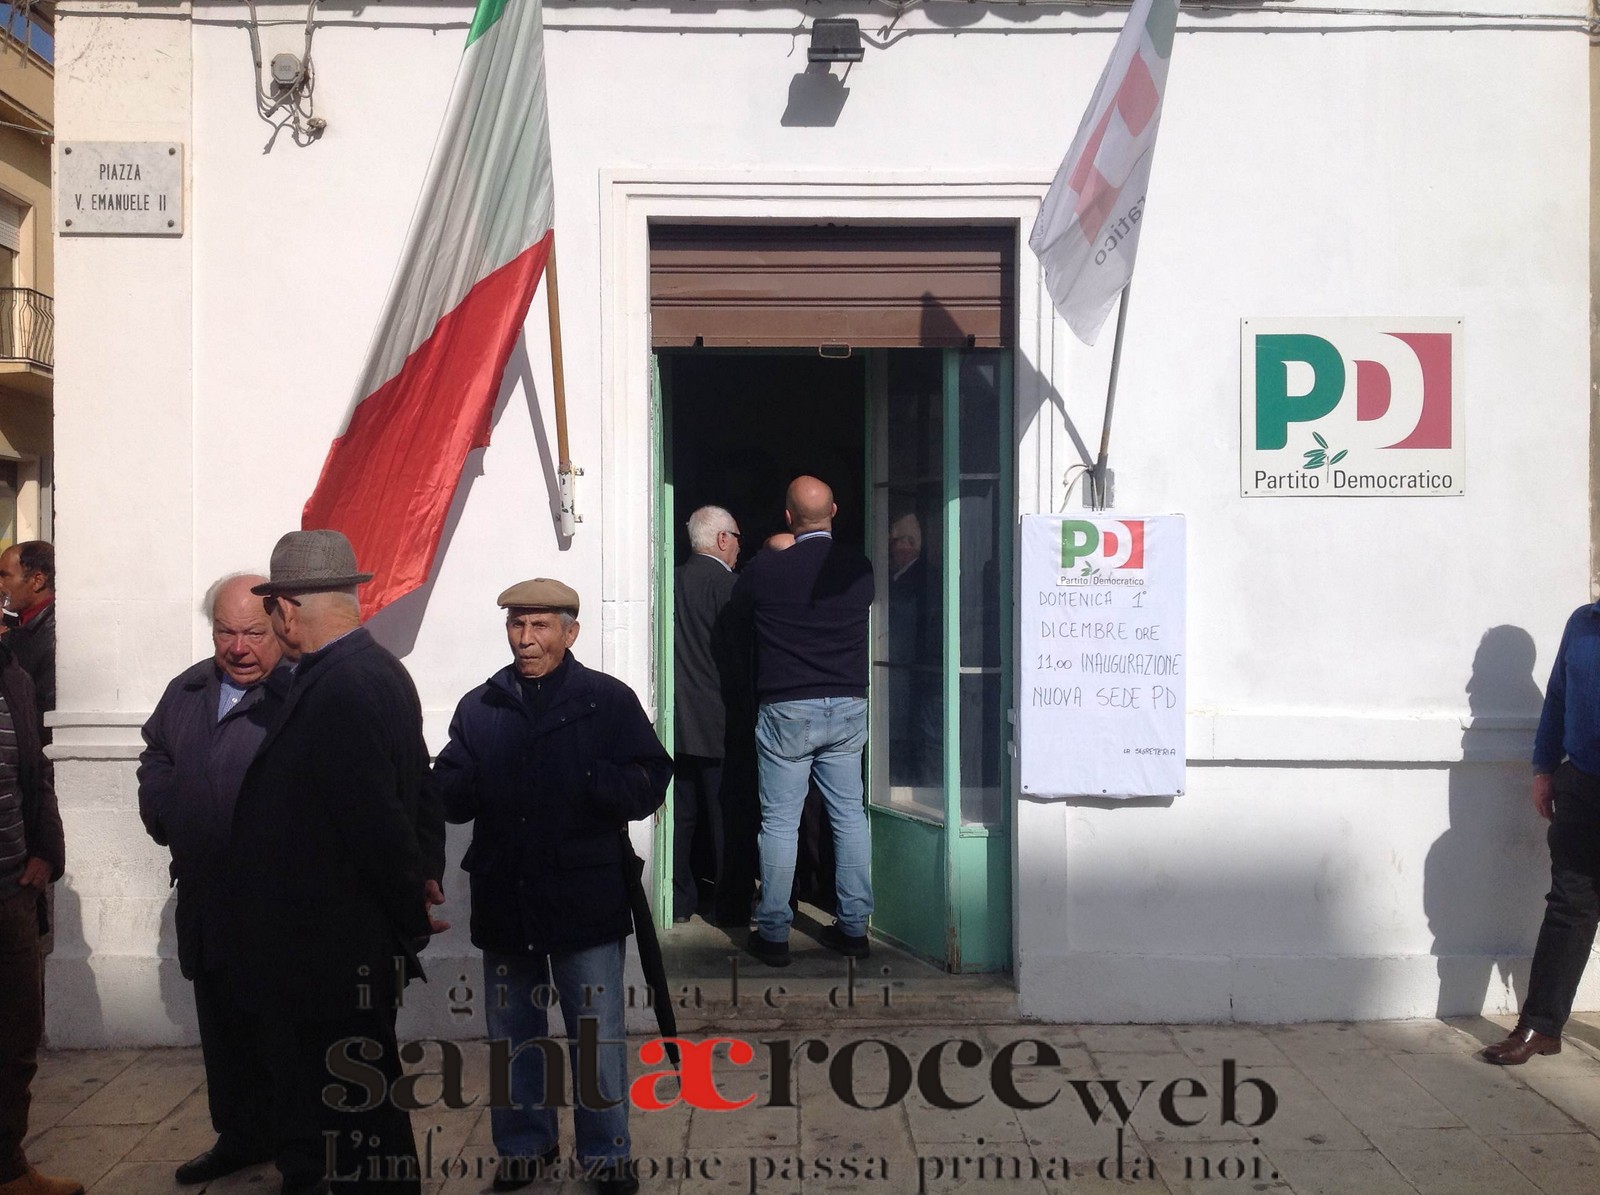  Inaugurata la nuova sede del PD a Santa Croce: presenti il sindaco e lo stato maggiore del partito